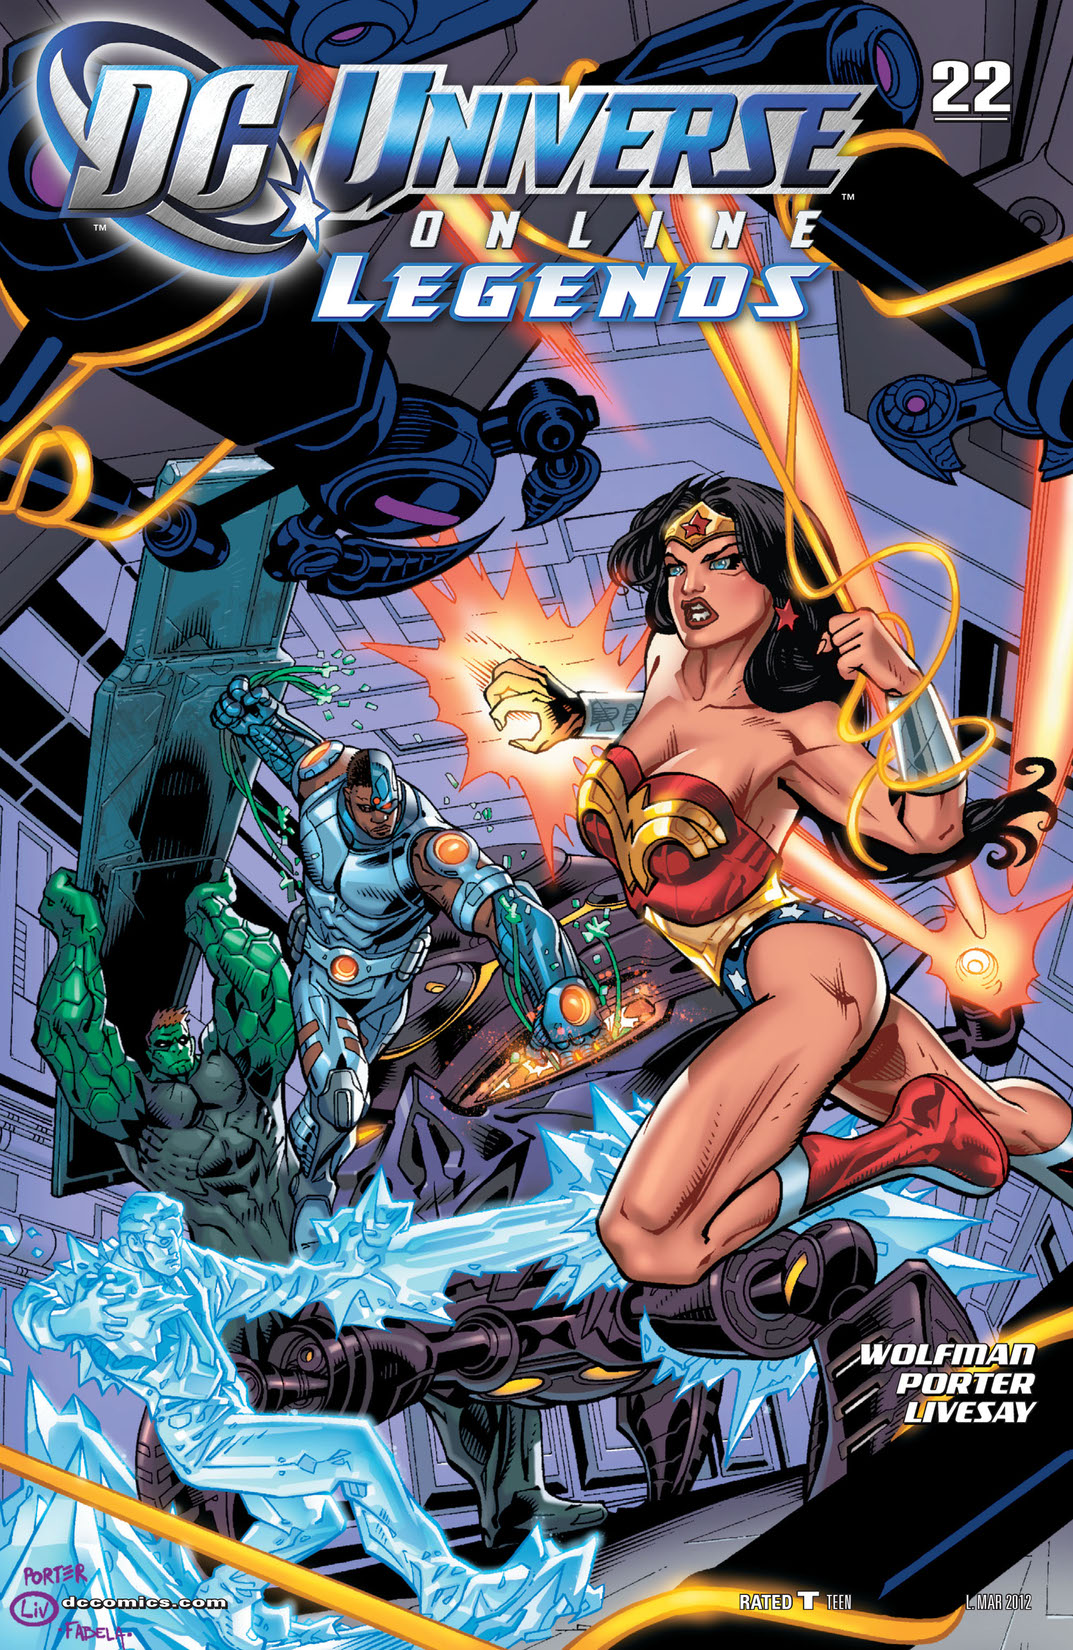 DC Universe Online Legends #22 preview images